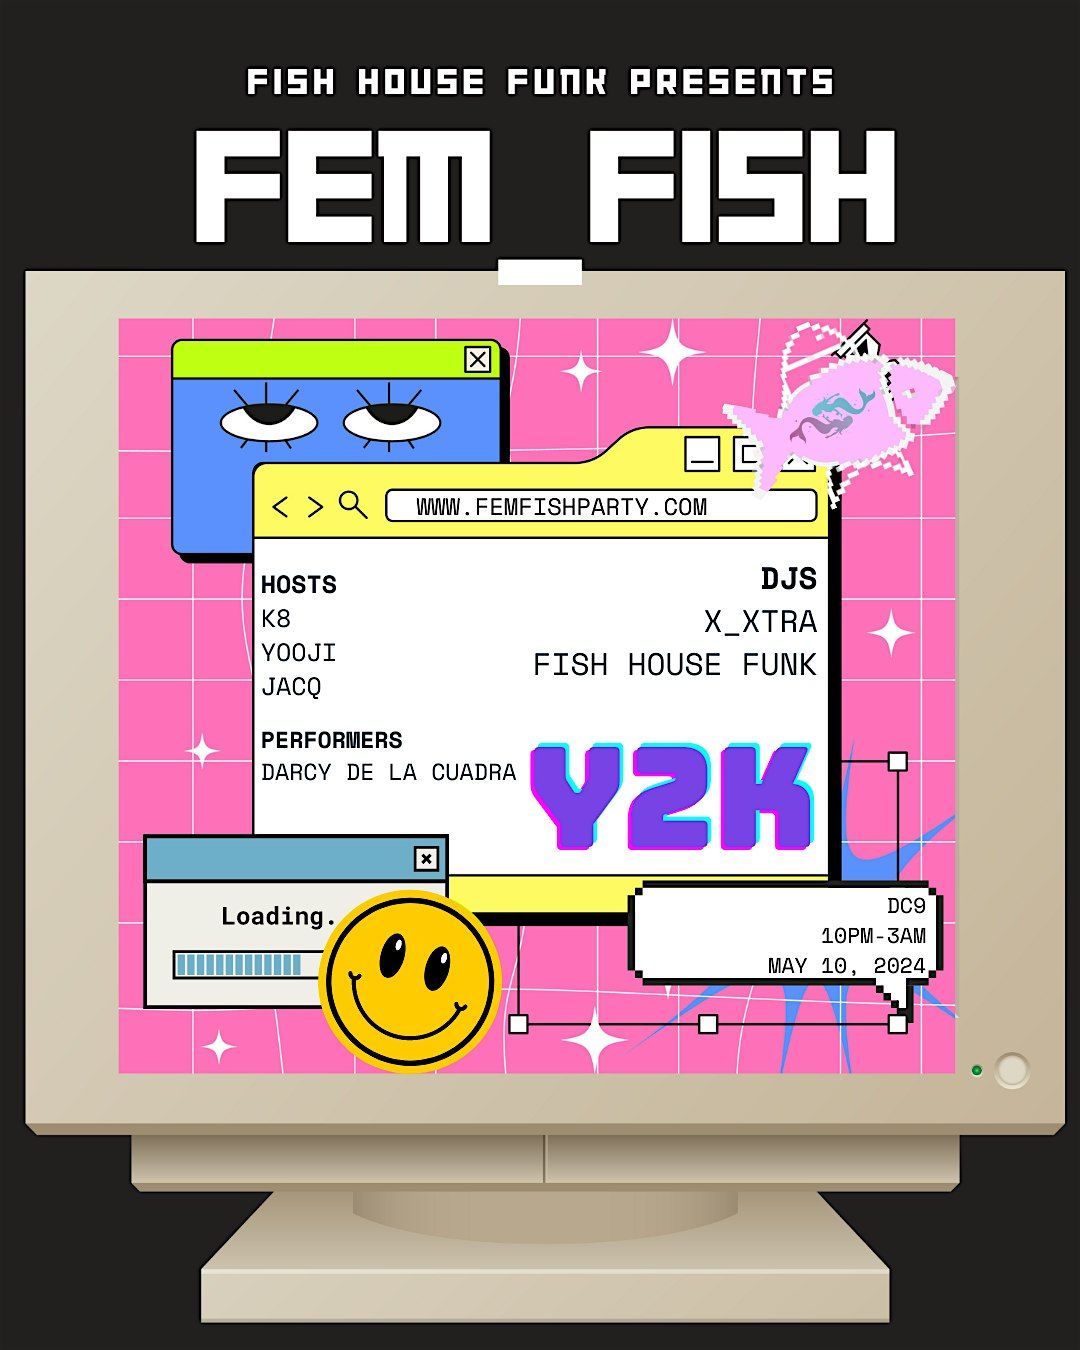 FEM FISH